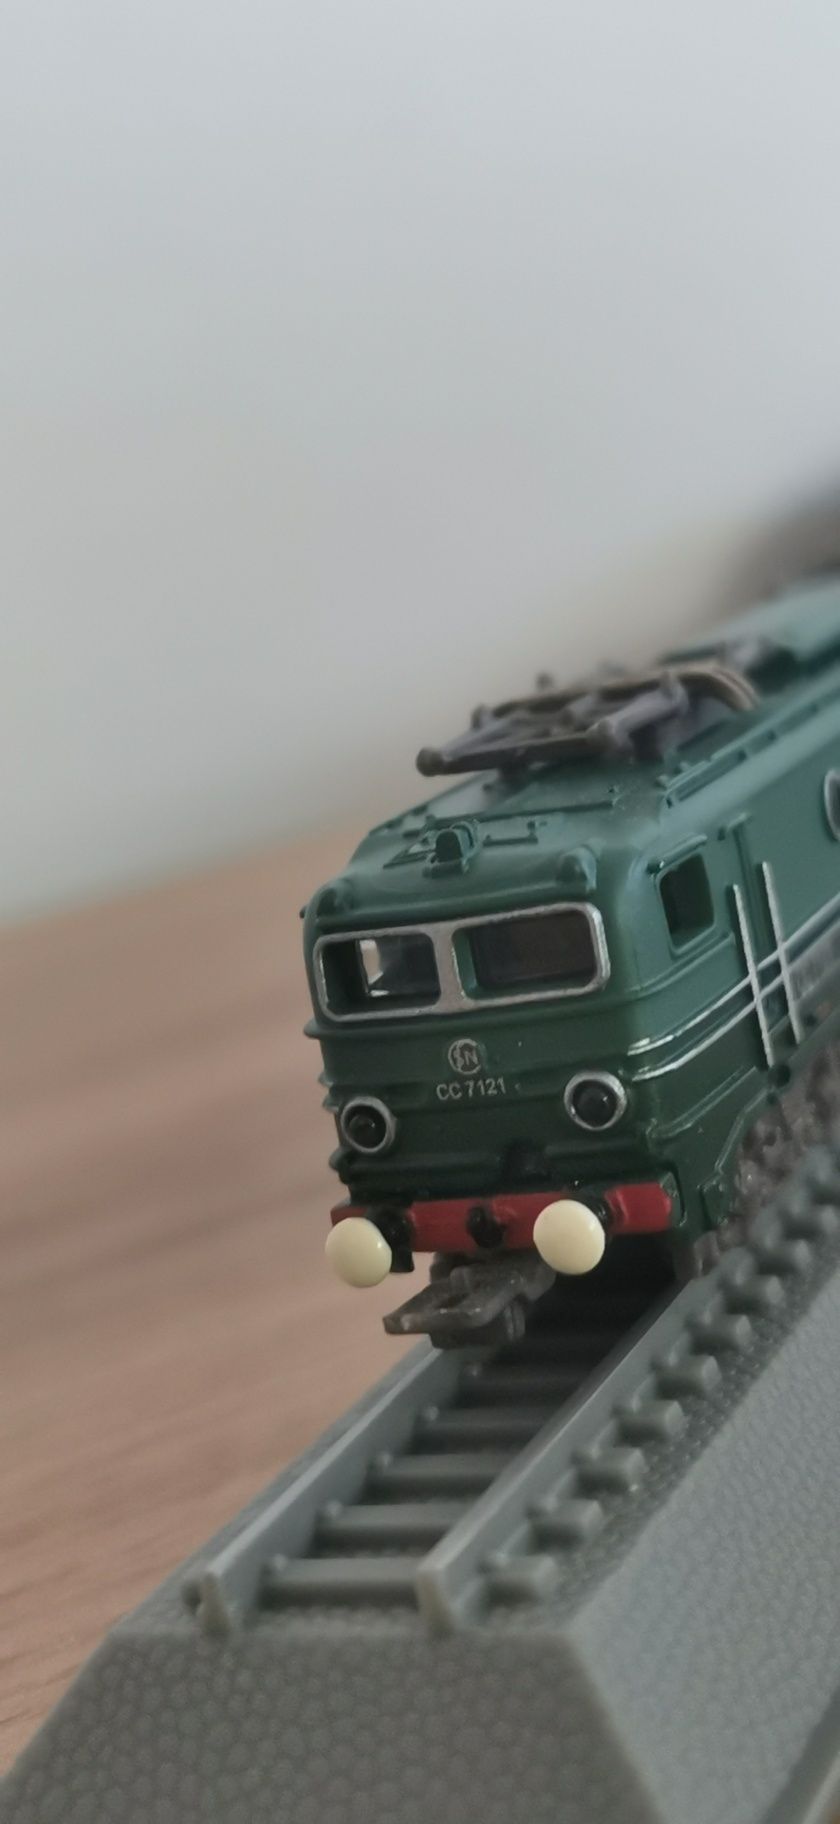 Locomotivă sncf cc 7100